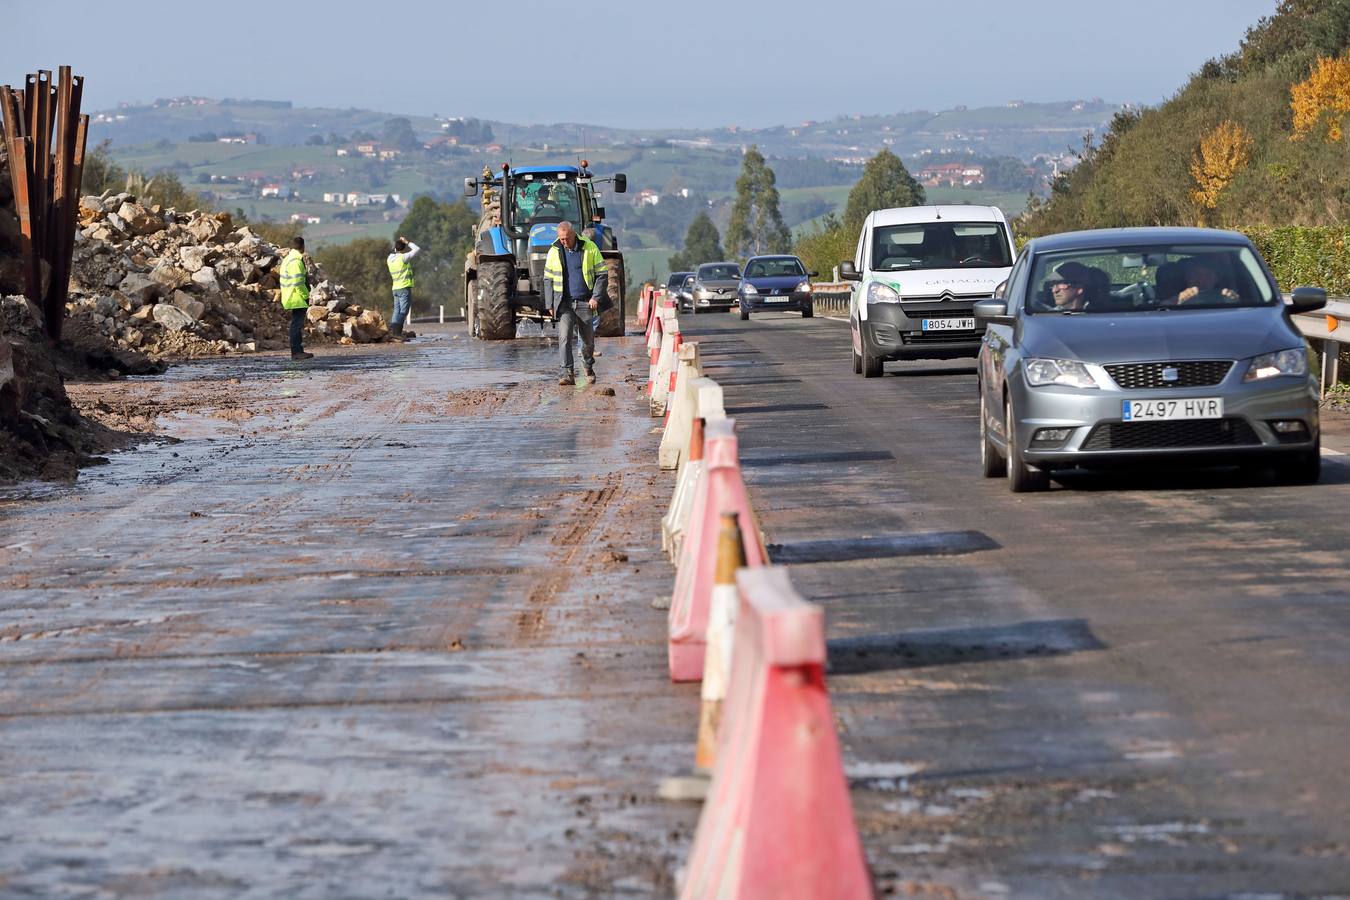 Tras casi una semana cerrada al tráfico por la caída de un argayo de 80.000 toneladas, la A8 ha podido abrirse al tráfico. 